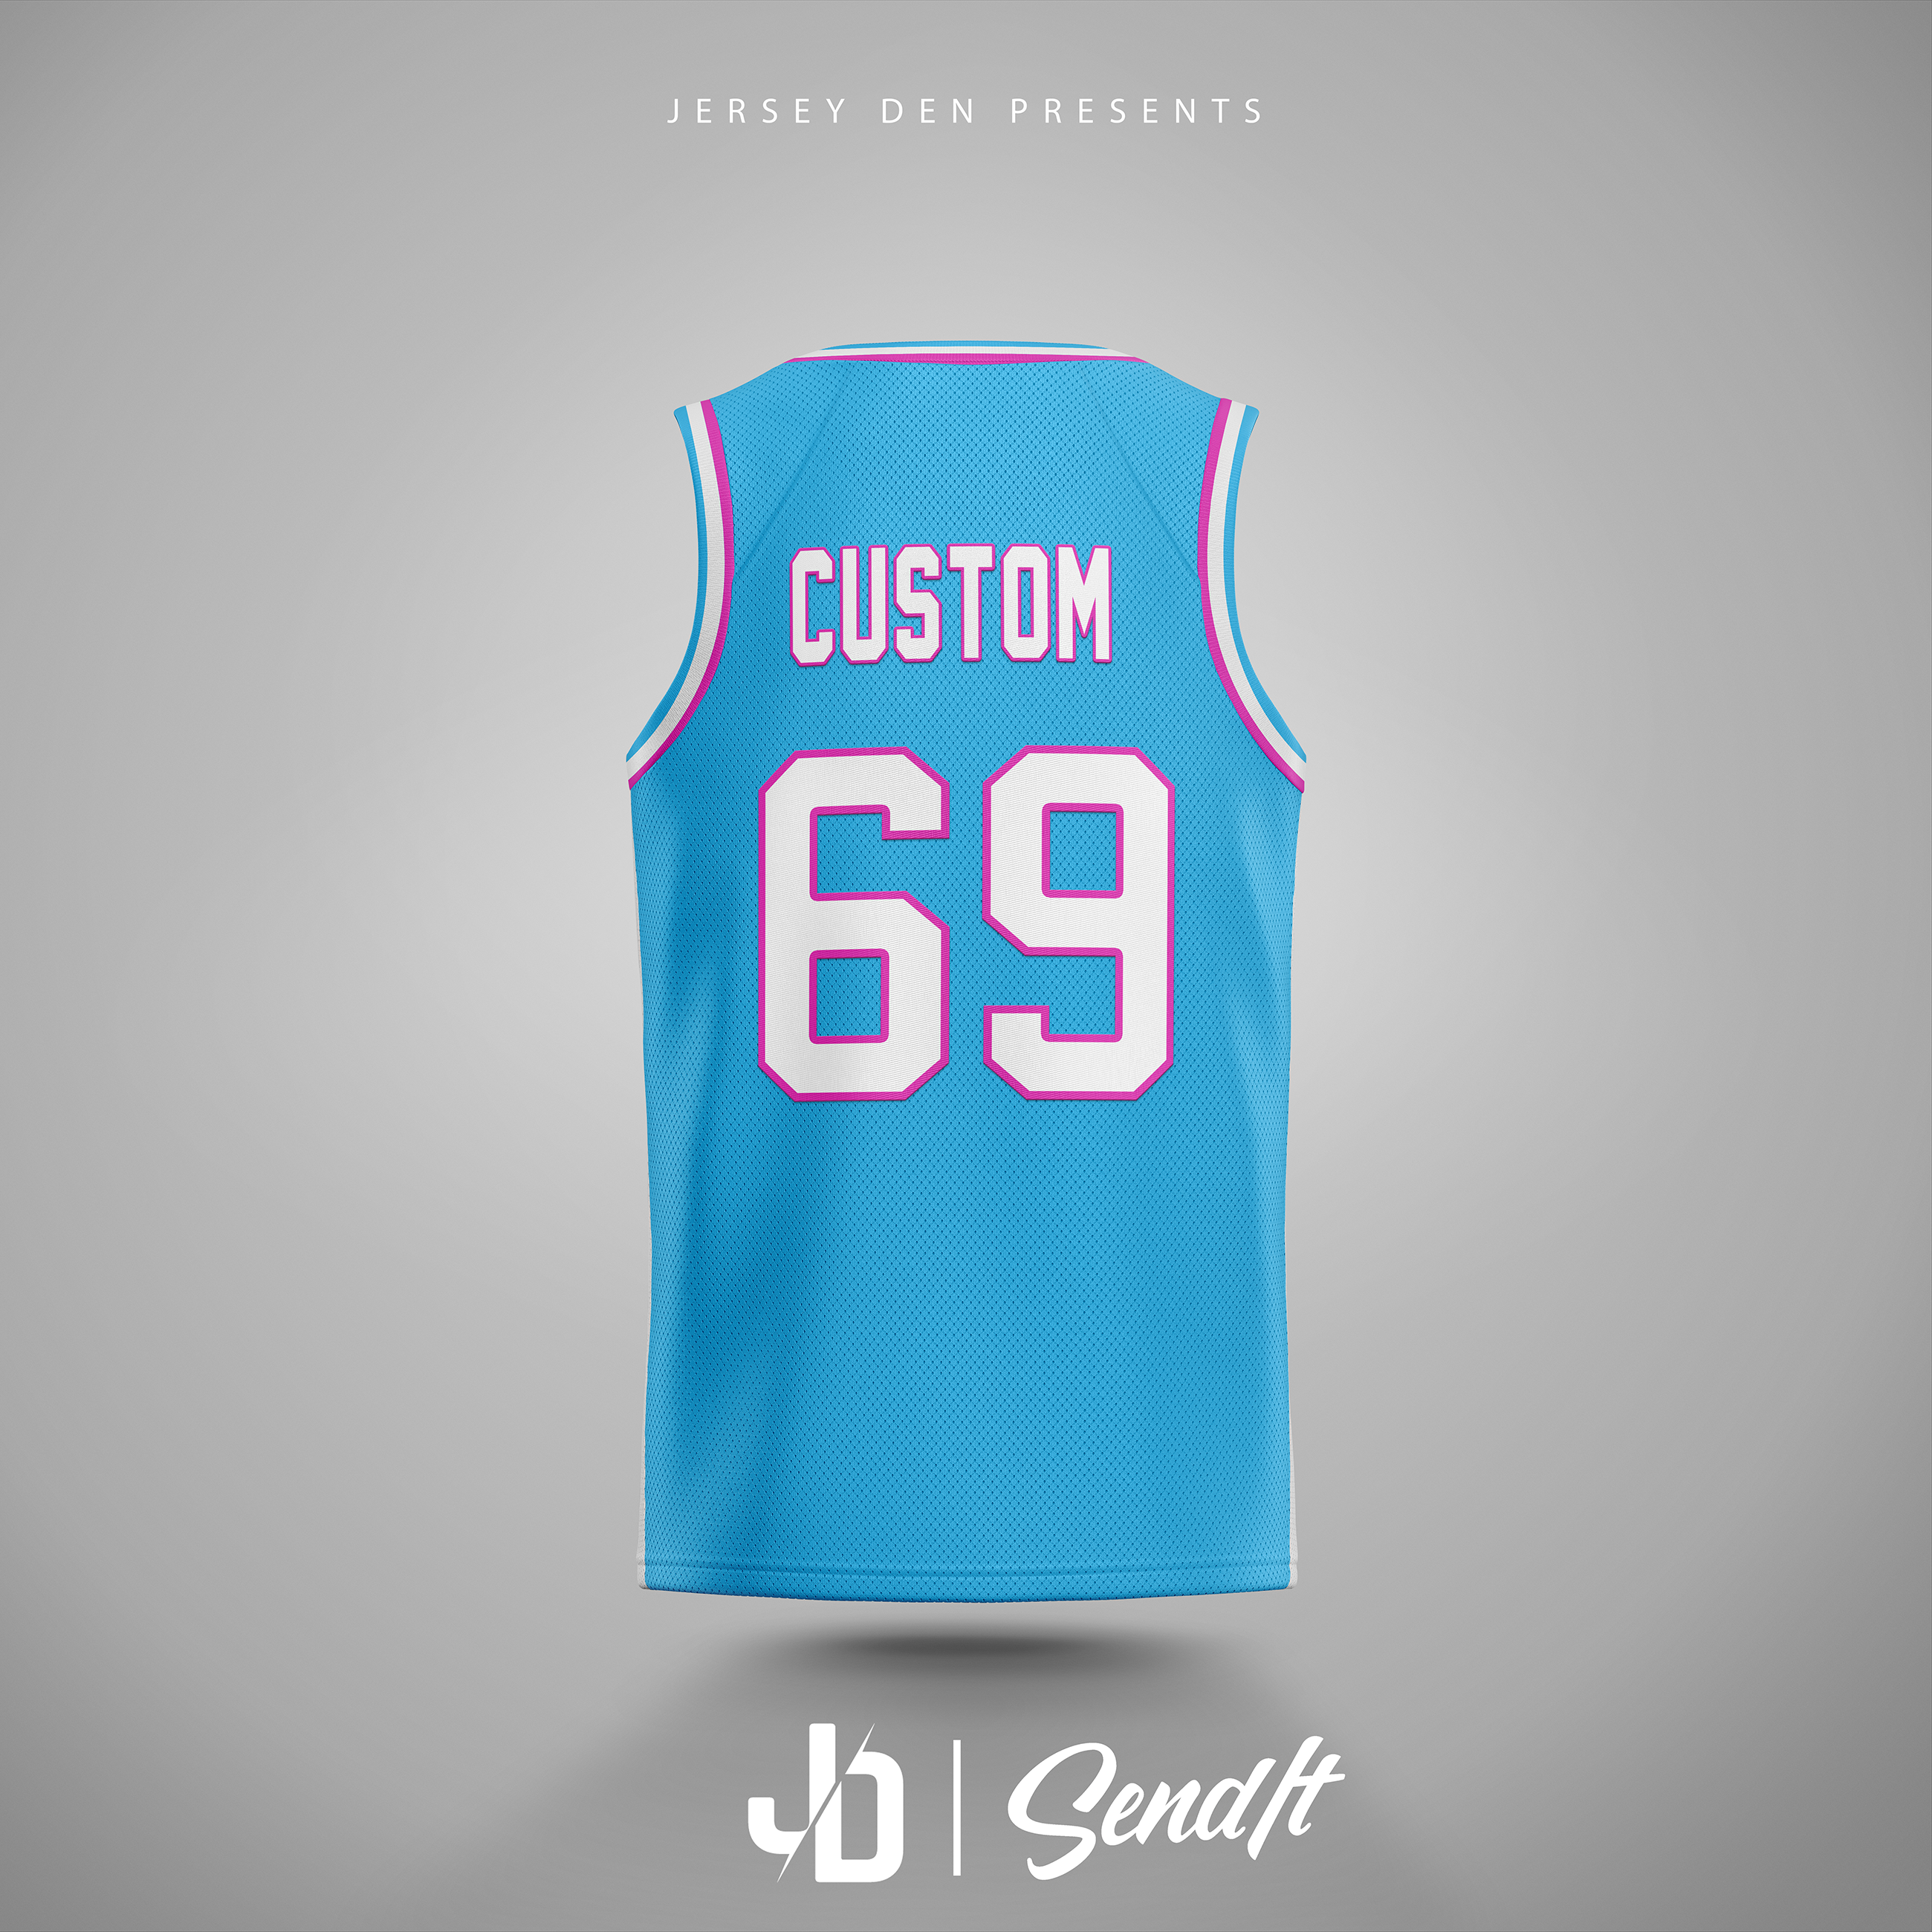 Customizable Send It ™ Basketball Jersey